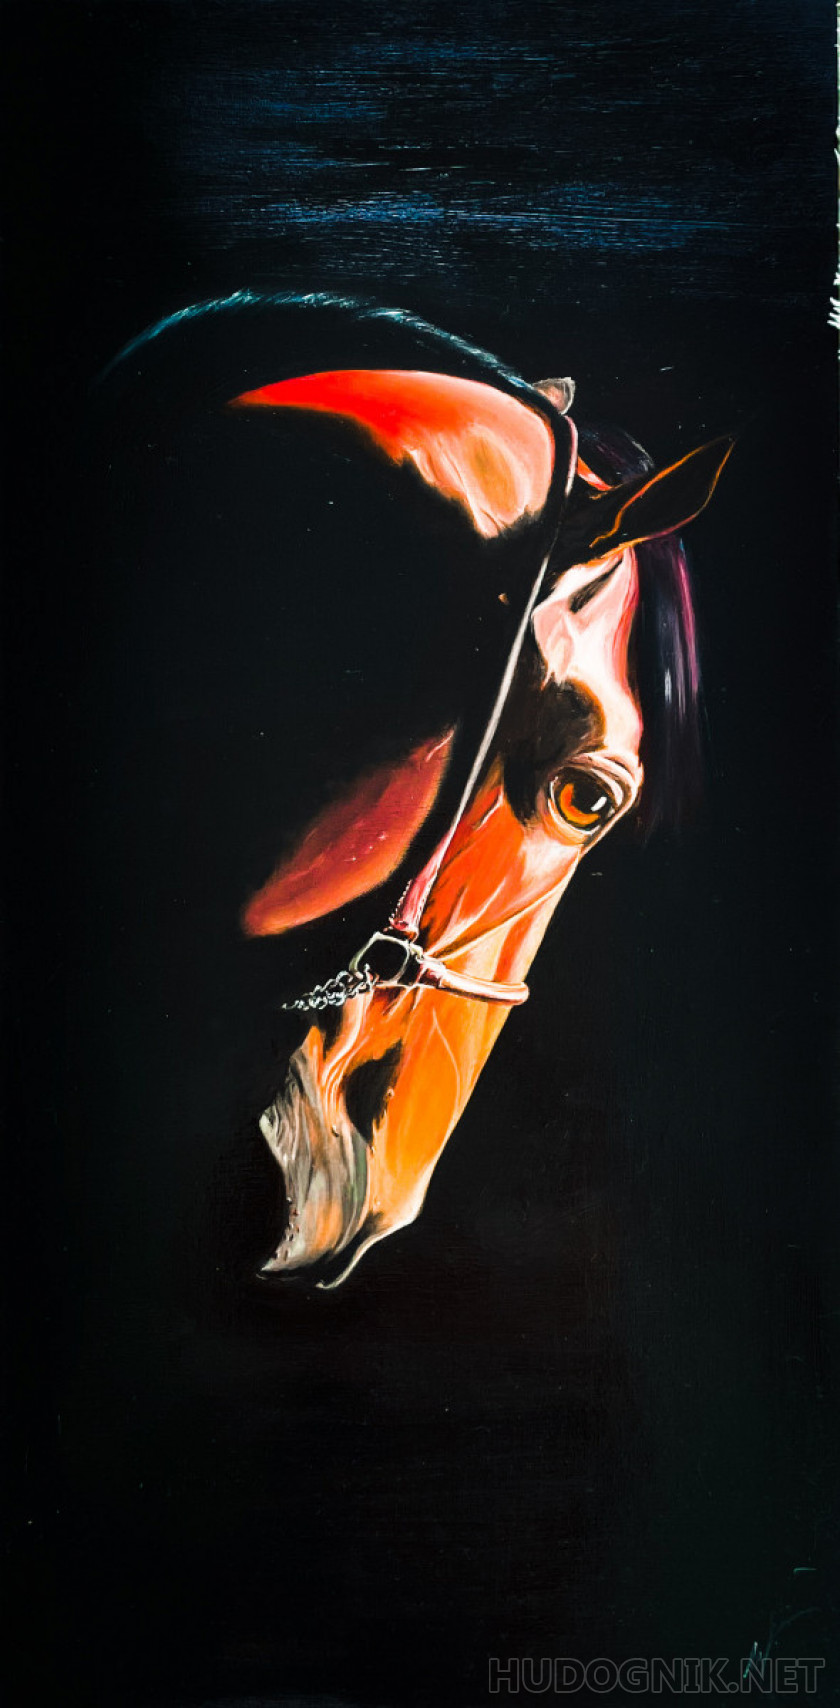 Horse's portrait